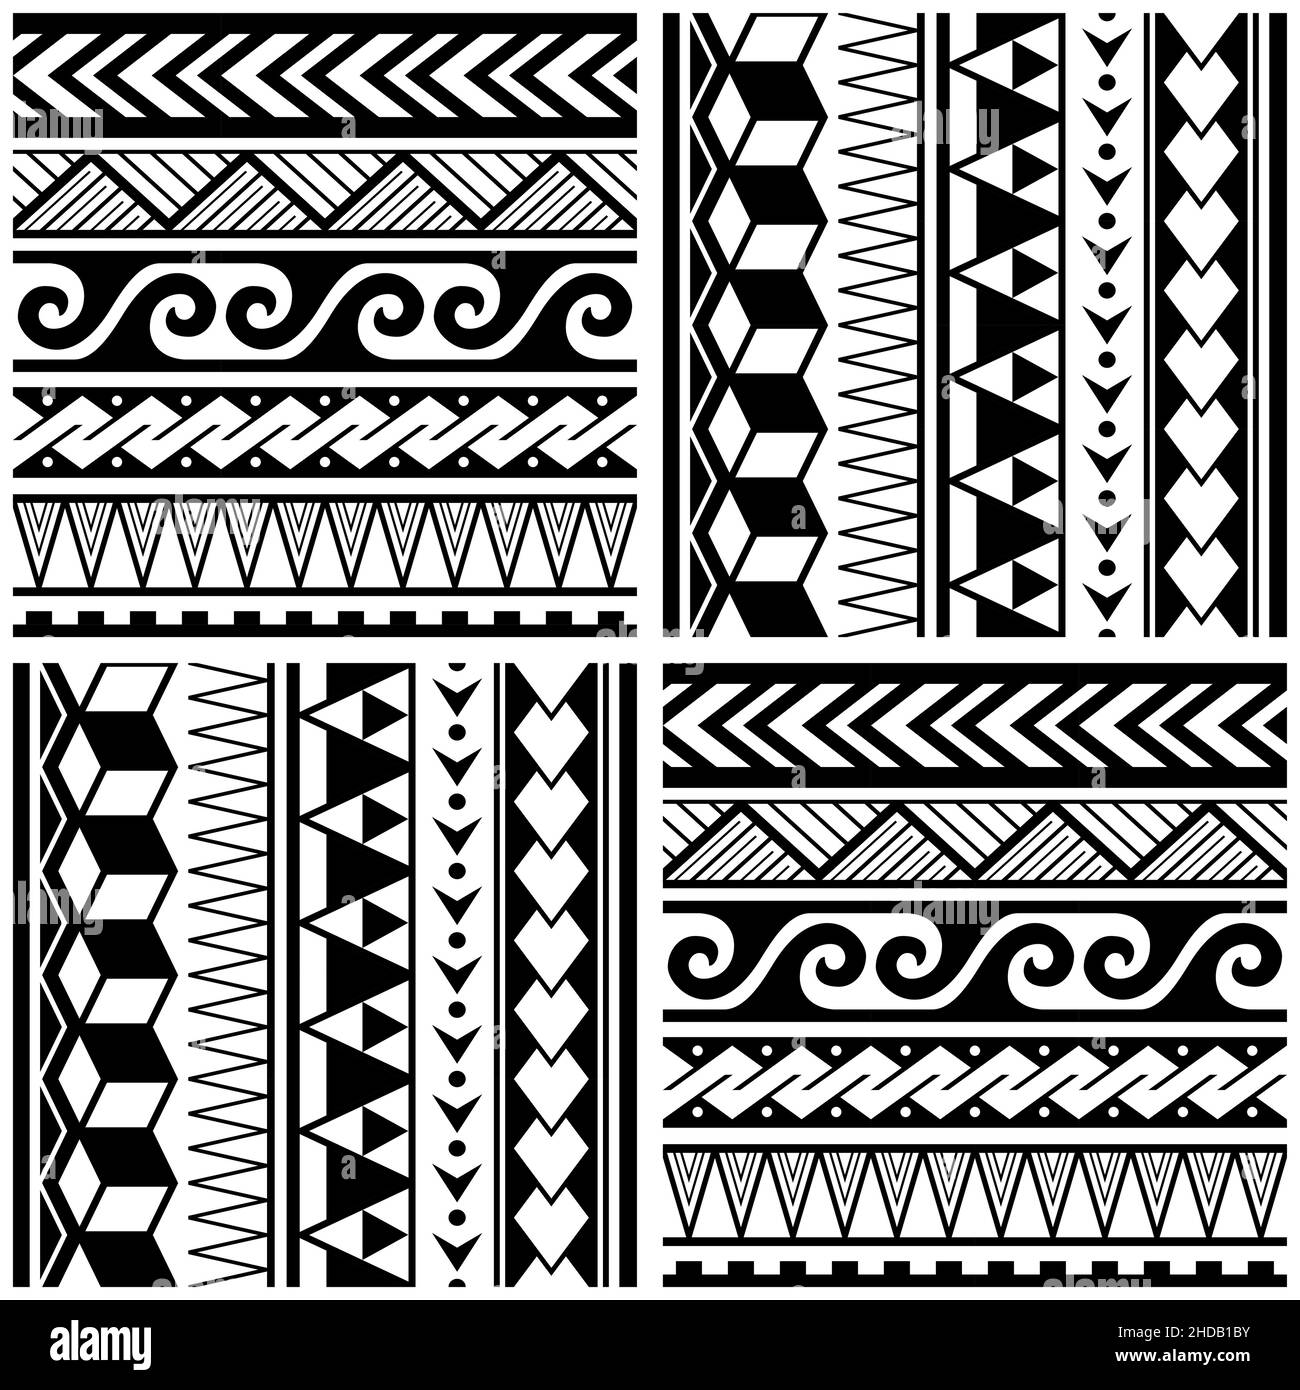 Motif vectoriel tribal polynésien sans couture avec formes géométriques : triangles, vagues en zigzag, tissu hawaïen ou imprimé en tissu noir et blanc Illustration de Vecteur